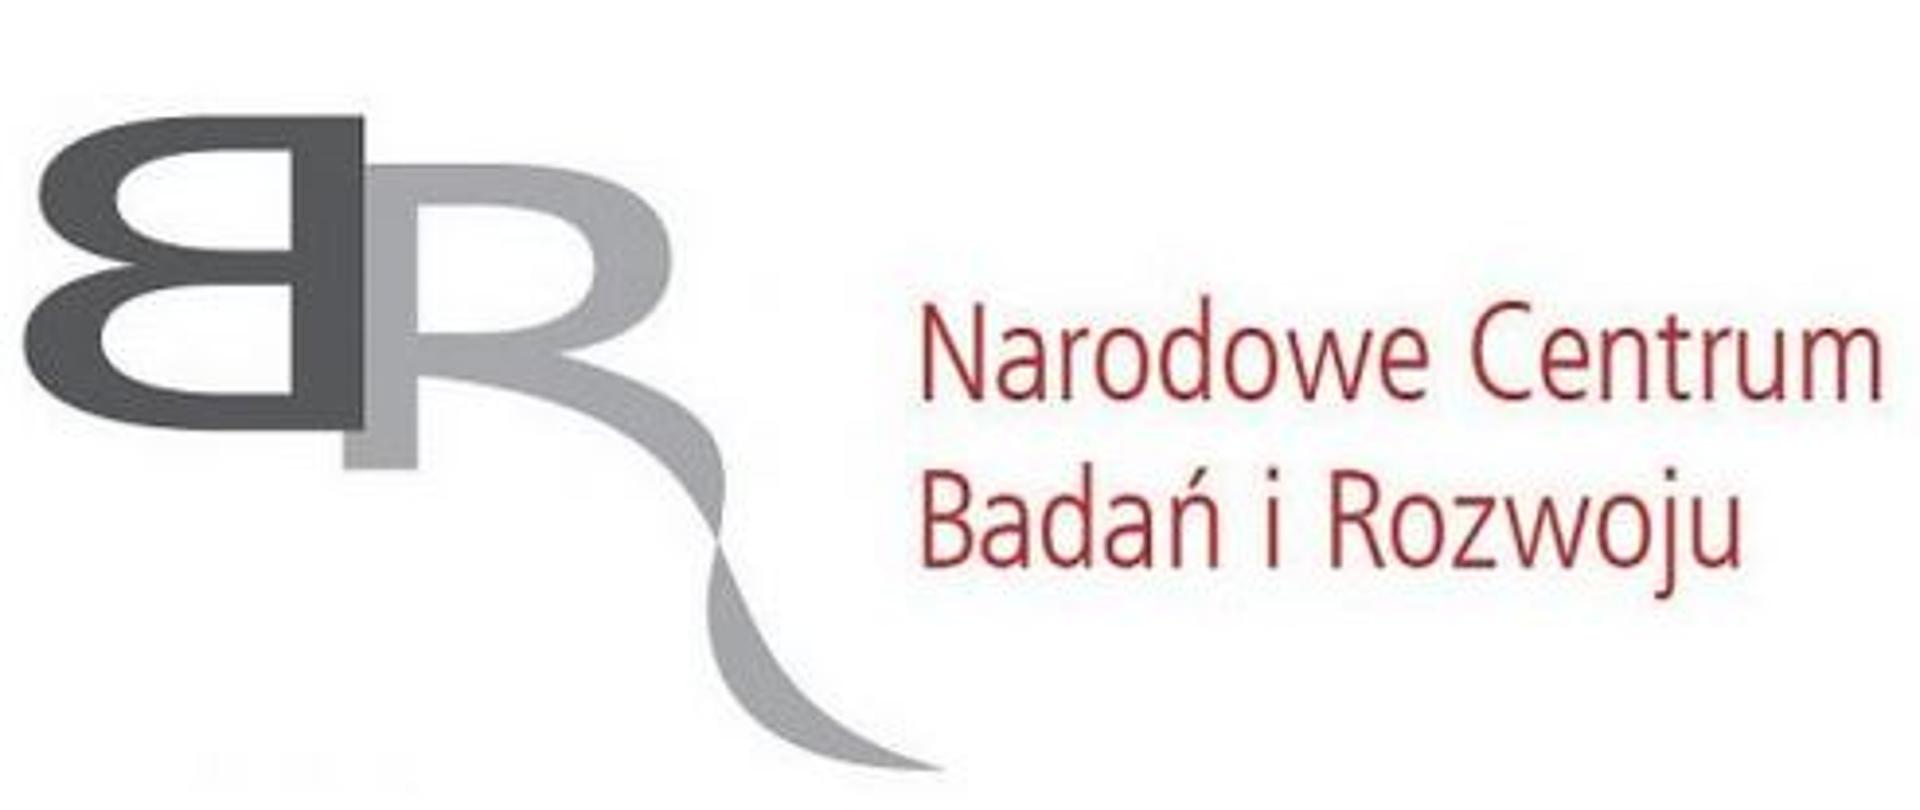 logo Narodowego Centrum Badań i Rozwoju w postaci liter B i R stykających się pionowymi powierzchniami oraz w postaci napisu Narodowe Centrum Badań i Rozwoju